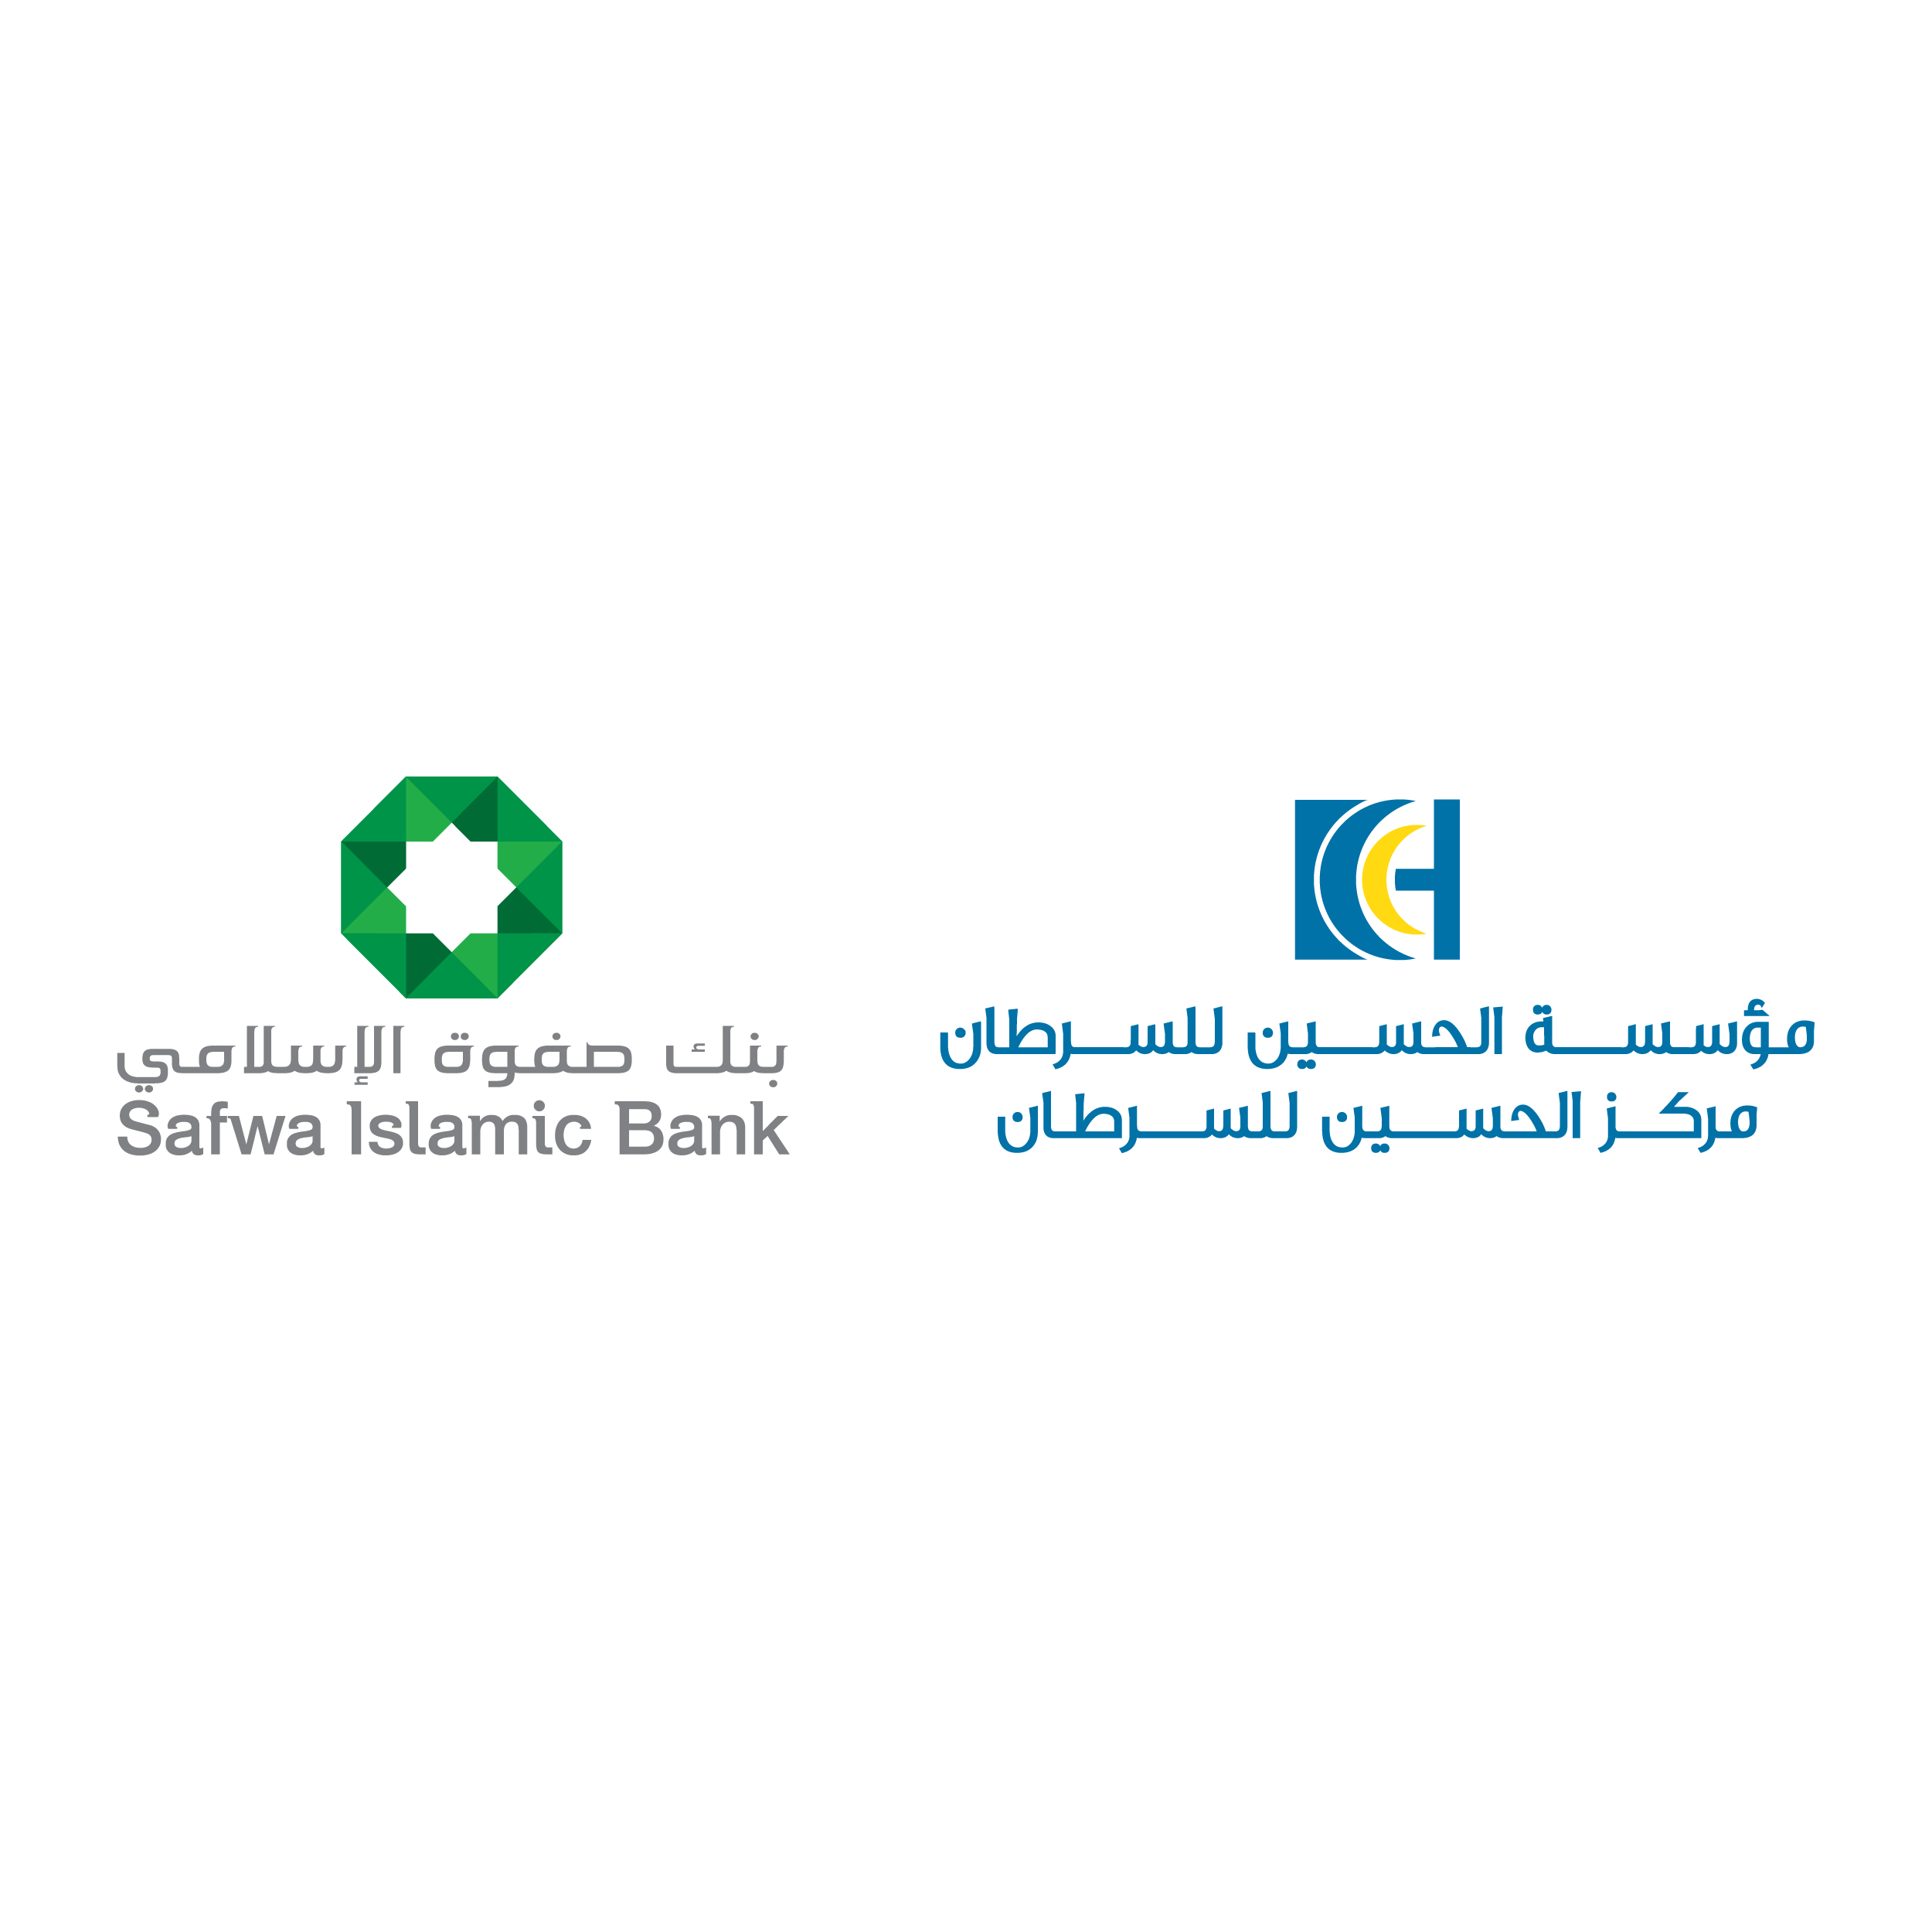 مؤسسة الحسين للسرطان توقع اتفاقية تعاون مع بنك صفوة الإسلامي